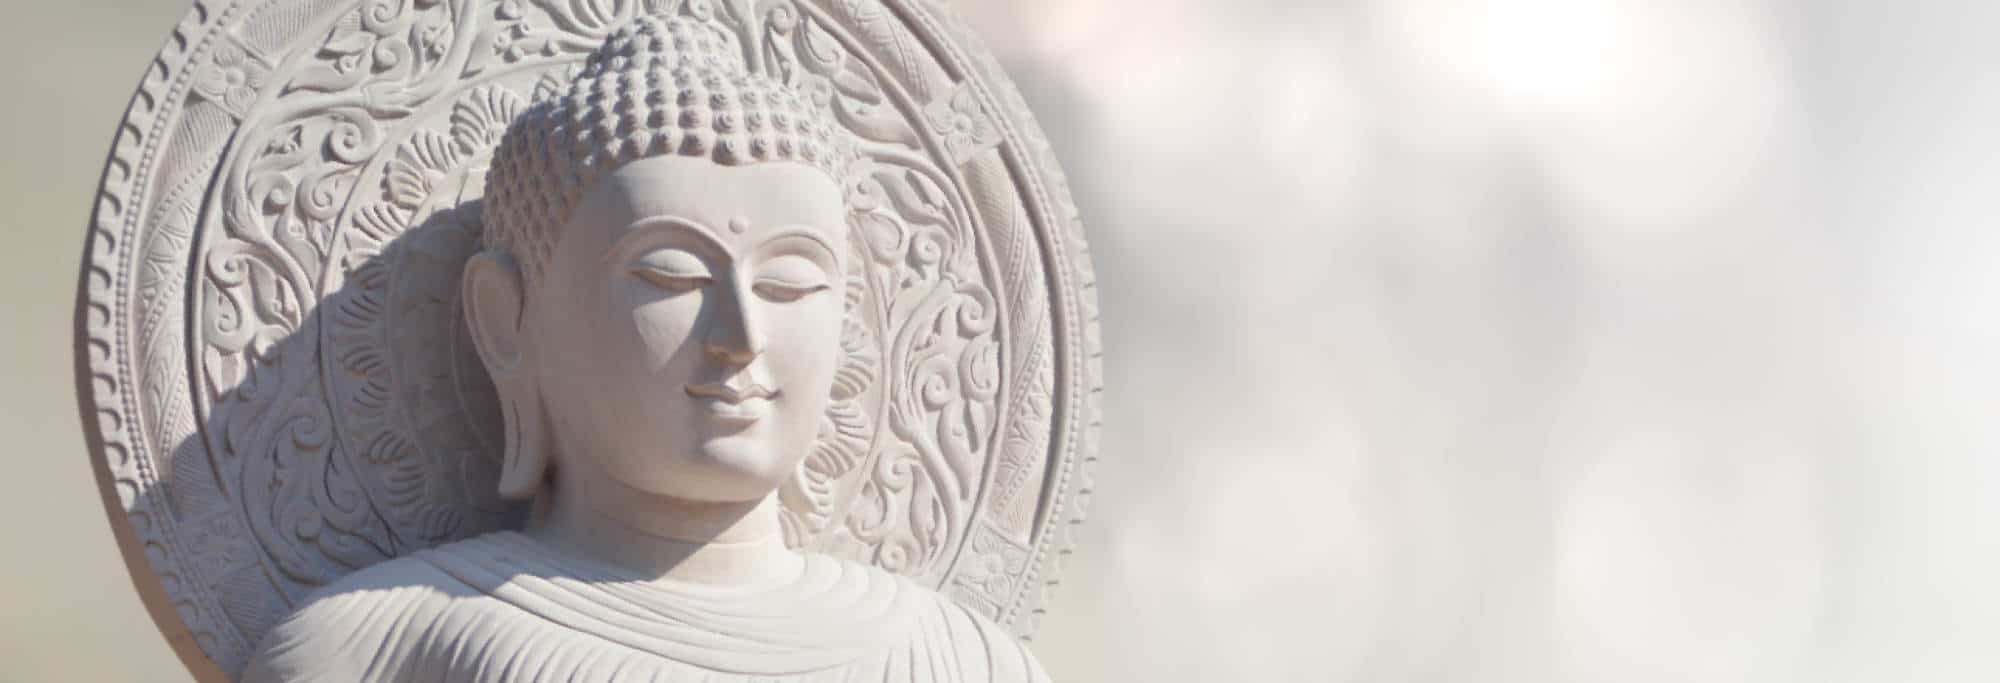 Ulrike Promies - Praxis für Psychotherapie - Innere Wege - Buddha - Statbild für Seite Spirituelle Wegbegleitung